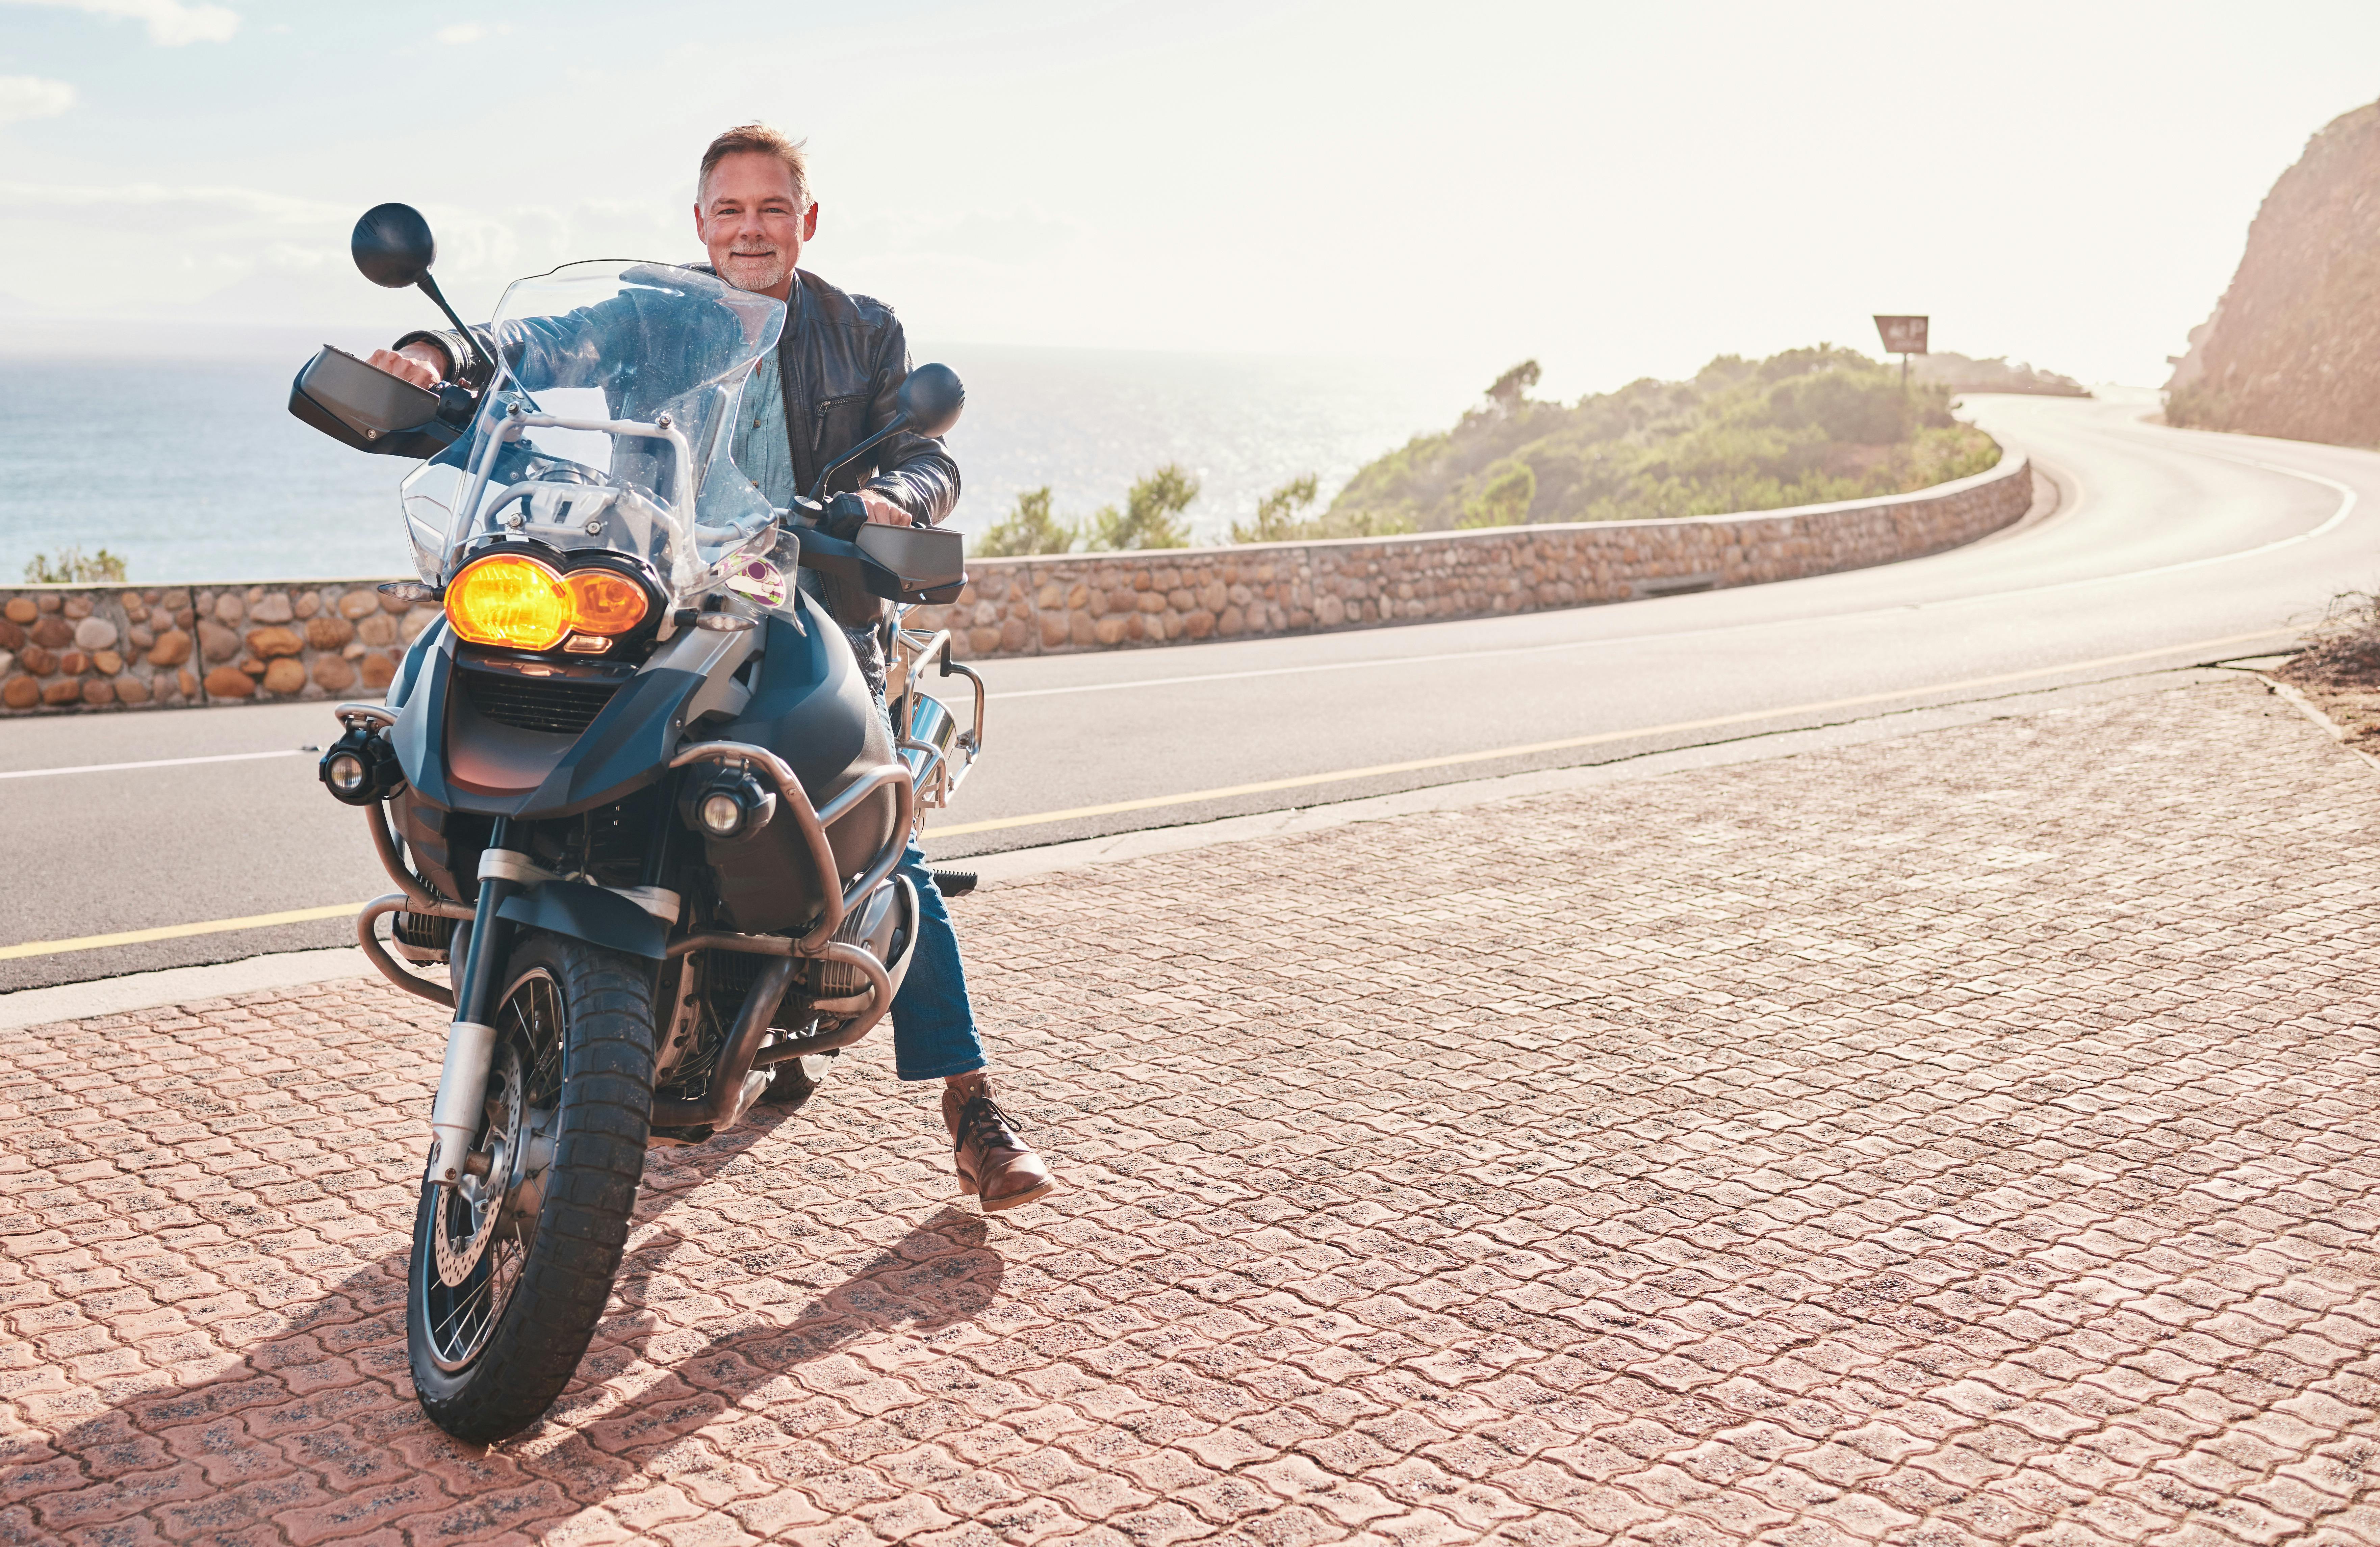 Midaldrende mand holder på sin motorcykel på en bjergvej langs havet.